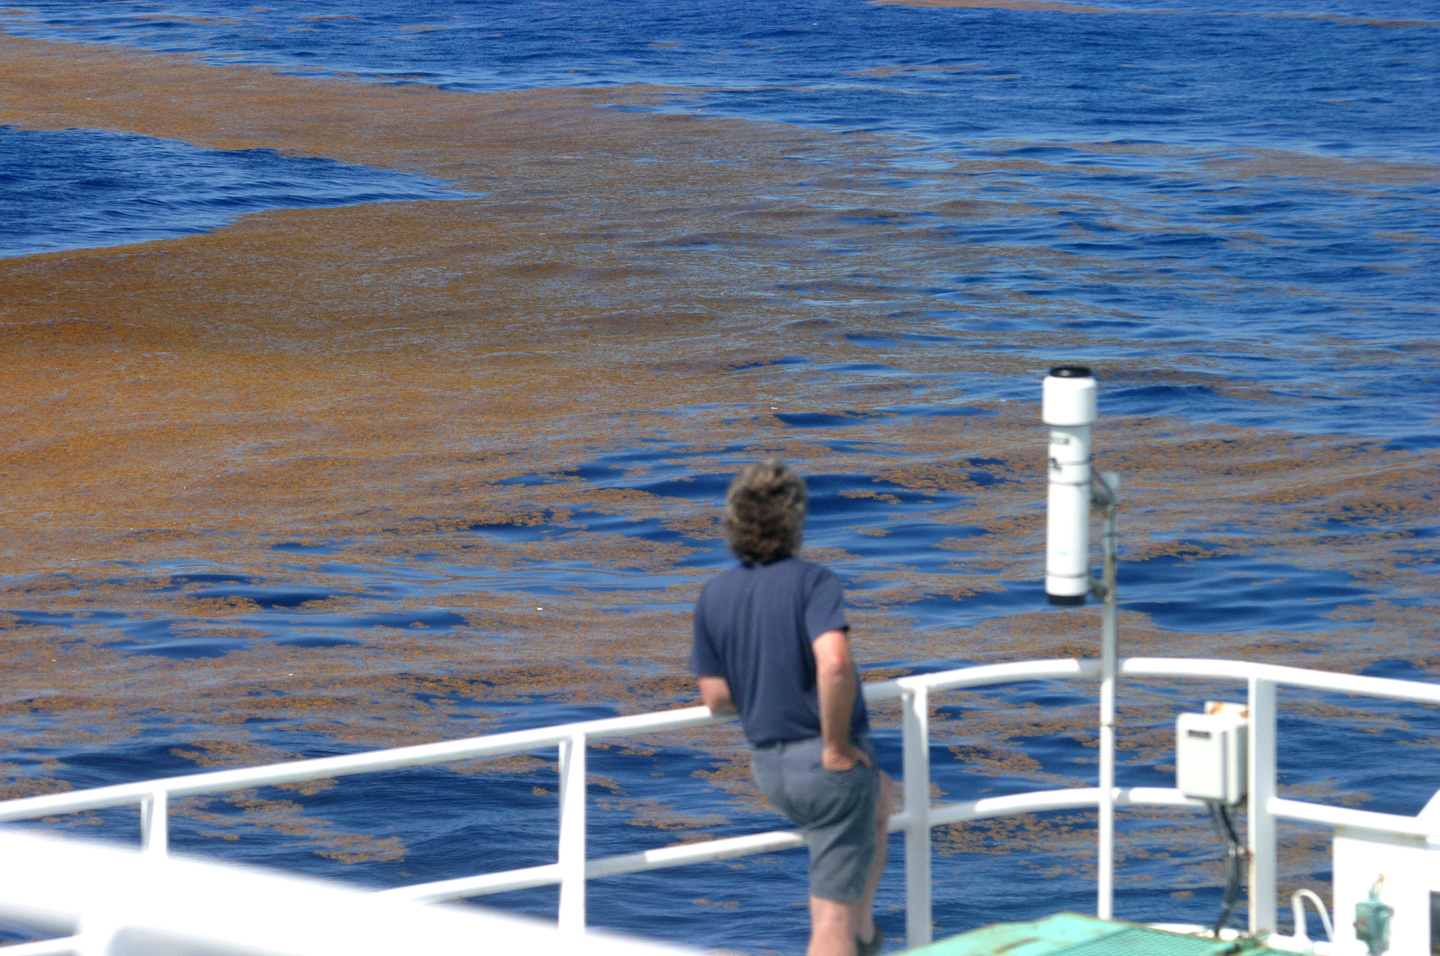 A researcher observes a mat of sargassum weed.